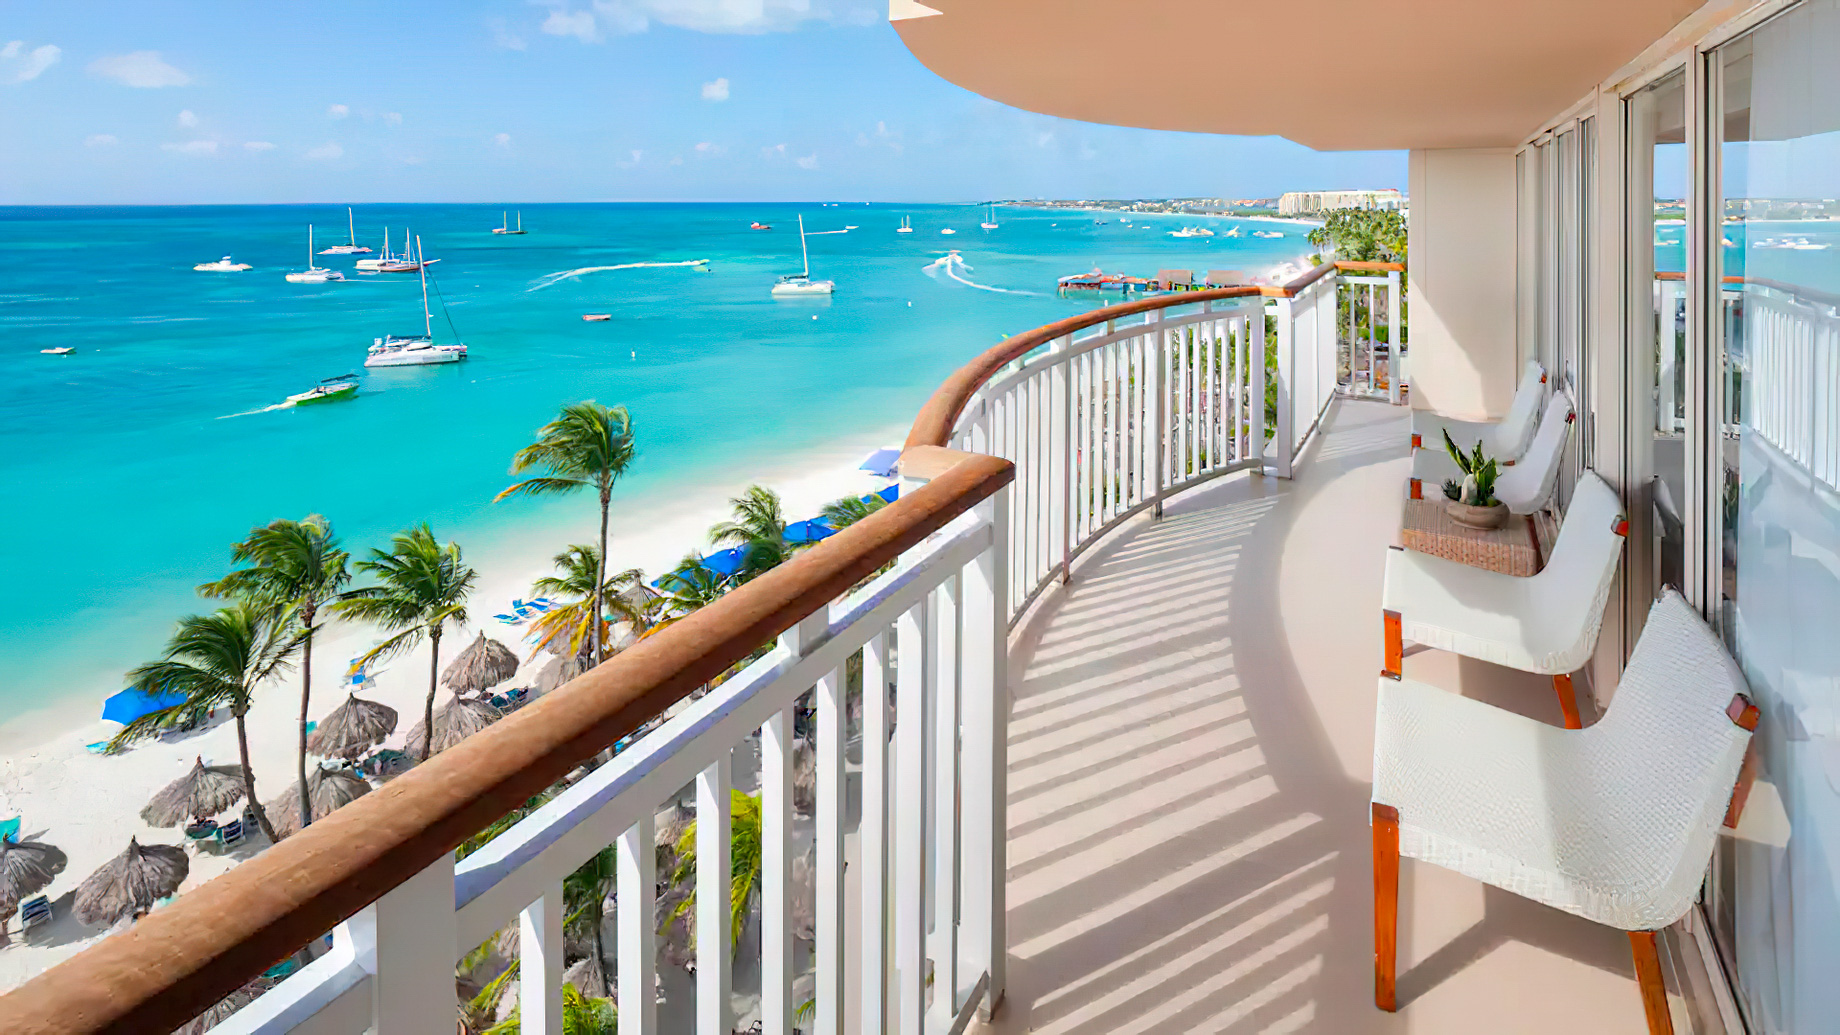 Hyatt Regency Aruba Resort & Casino - Noord, Aruba - Oceanfront Orquidea Suite with Balcony